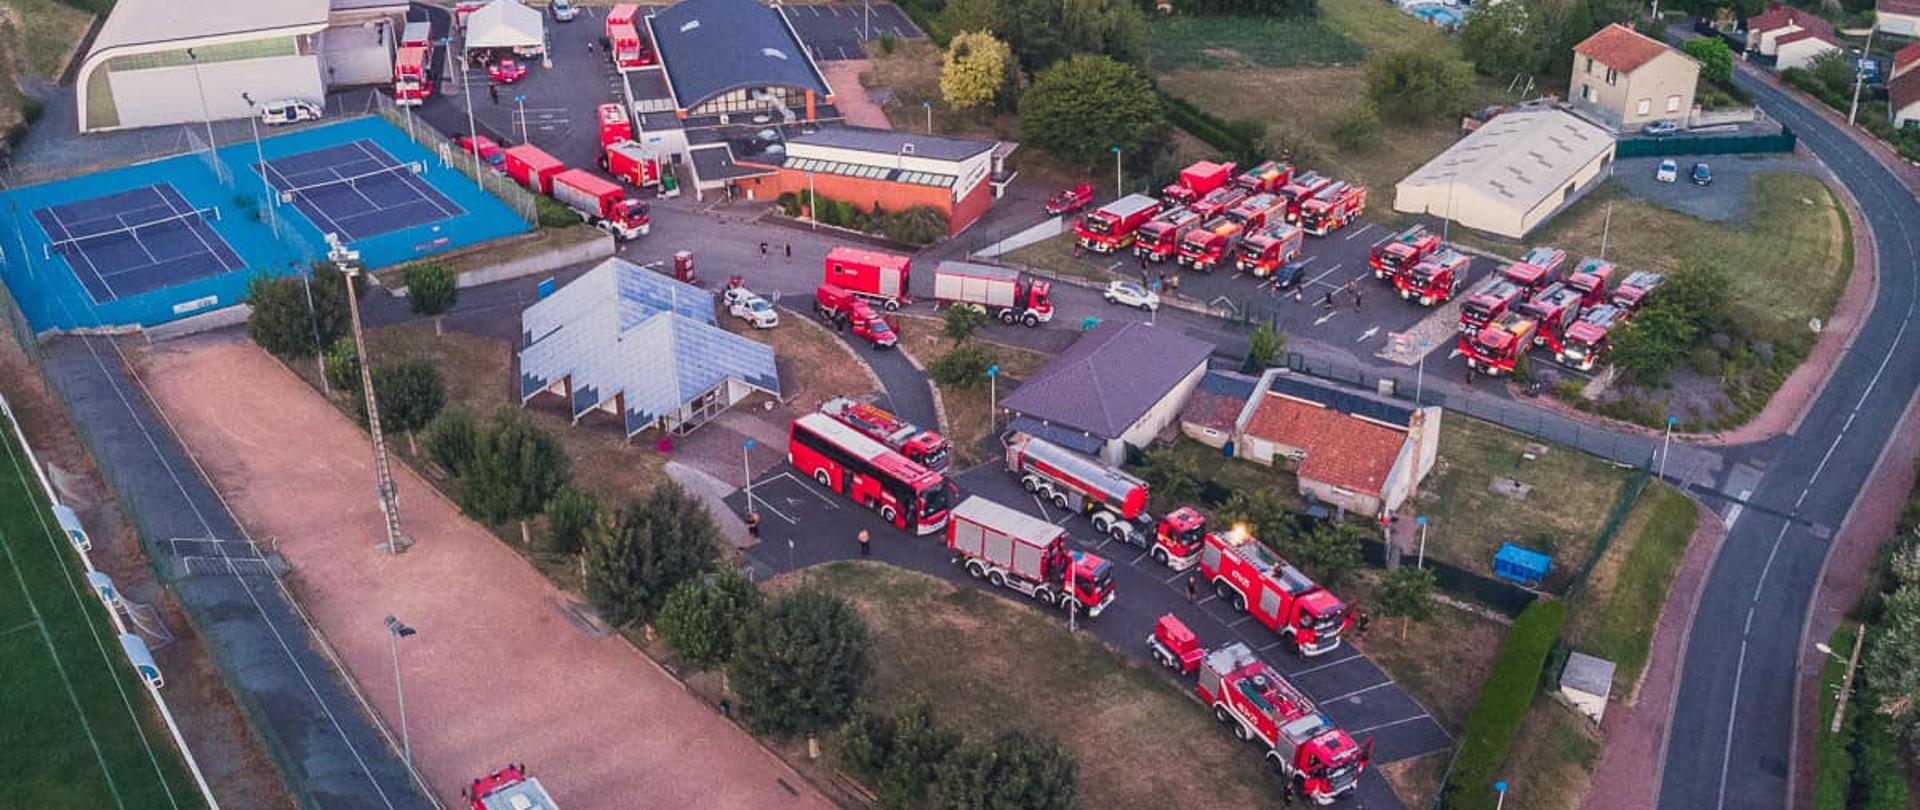 Widok z lotu ptaka miejsca postoju polskich strażaków. Widocznych jest kilkadziesiąt samochodów pożarniczych zaparkowanych w miejscu postoju